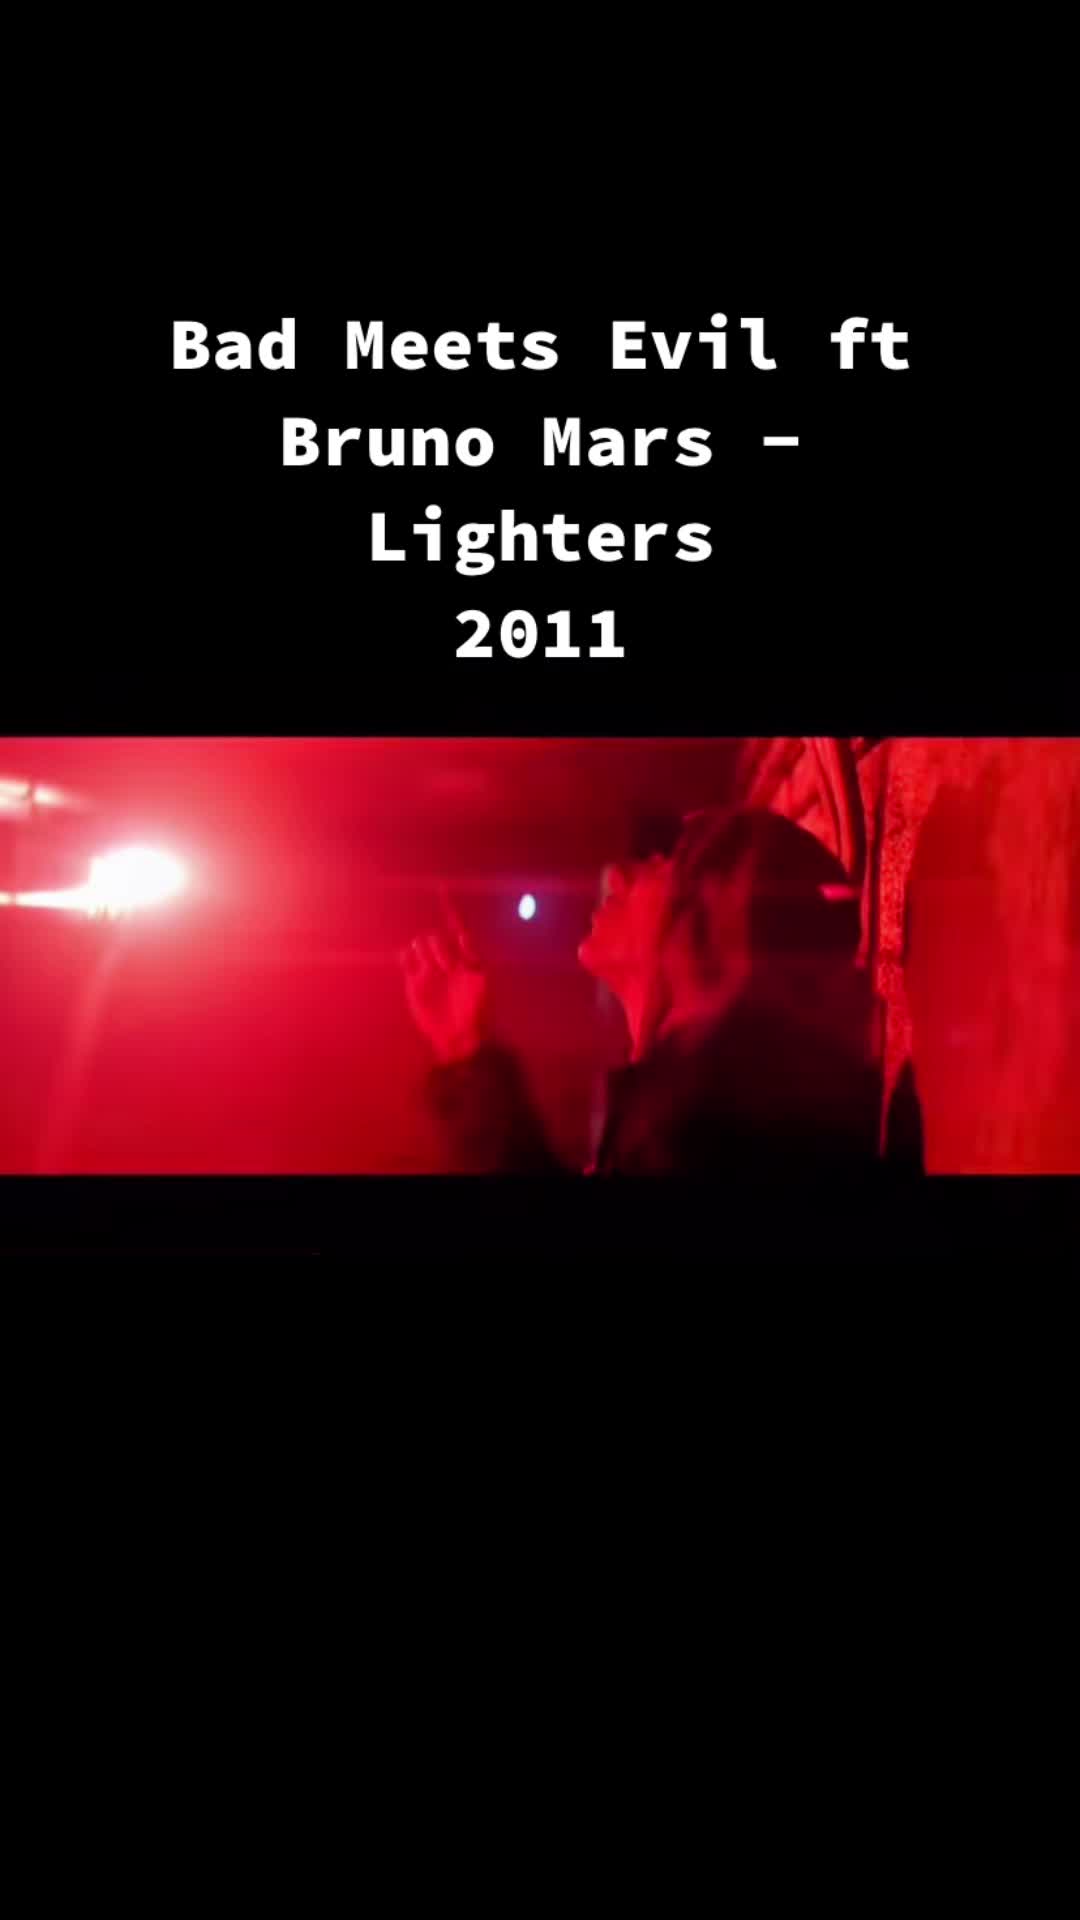 @2011 tune #badmeetsevil #brunomars #lighters #2011 #alternat...